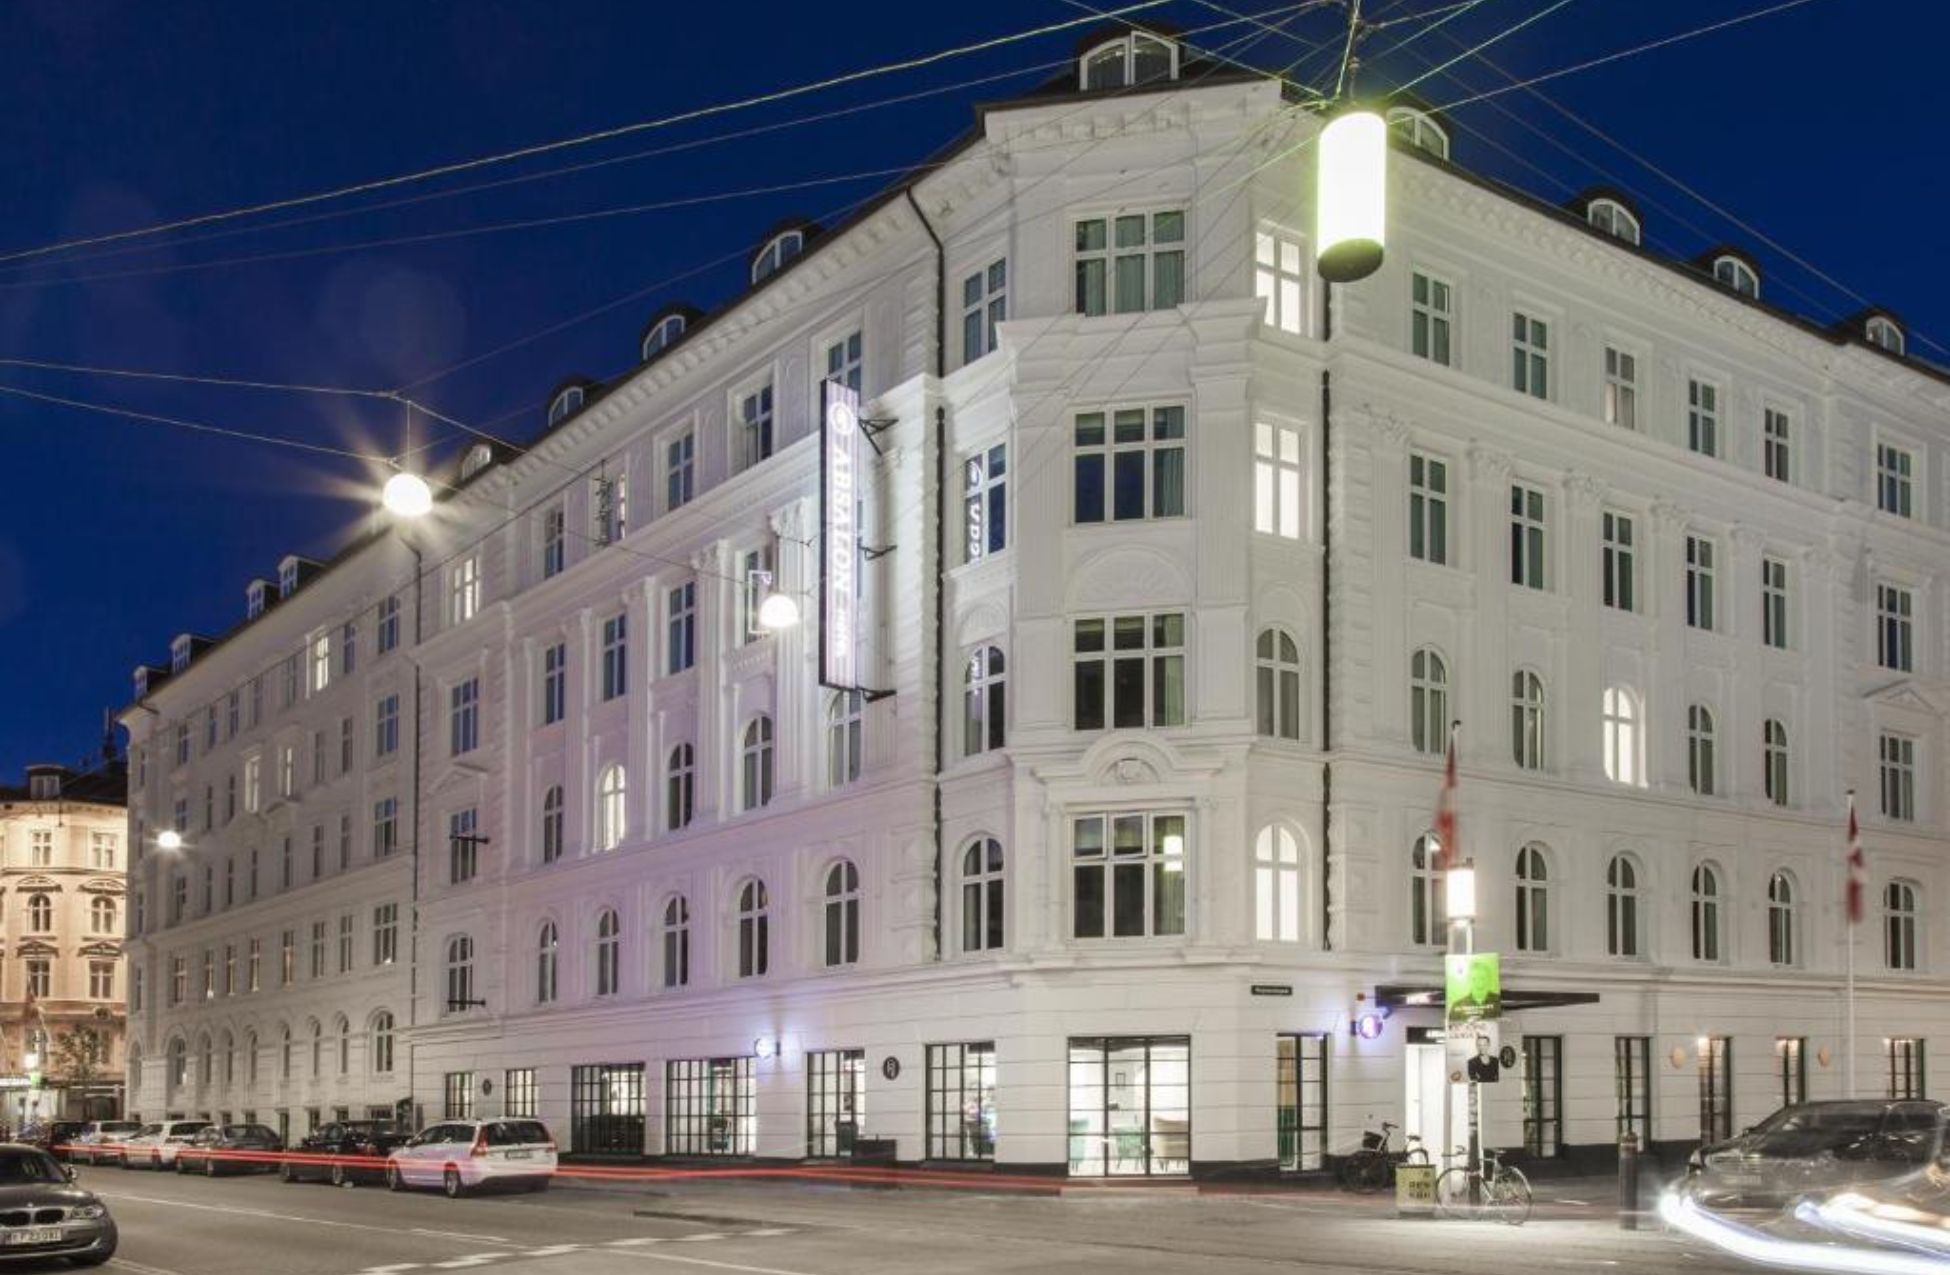 Absalon Hotel - Best Hotels In Copenhagen